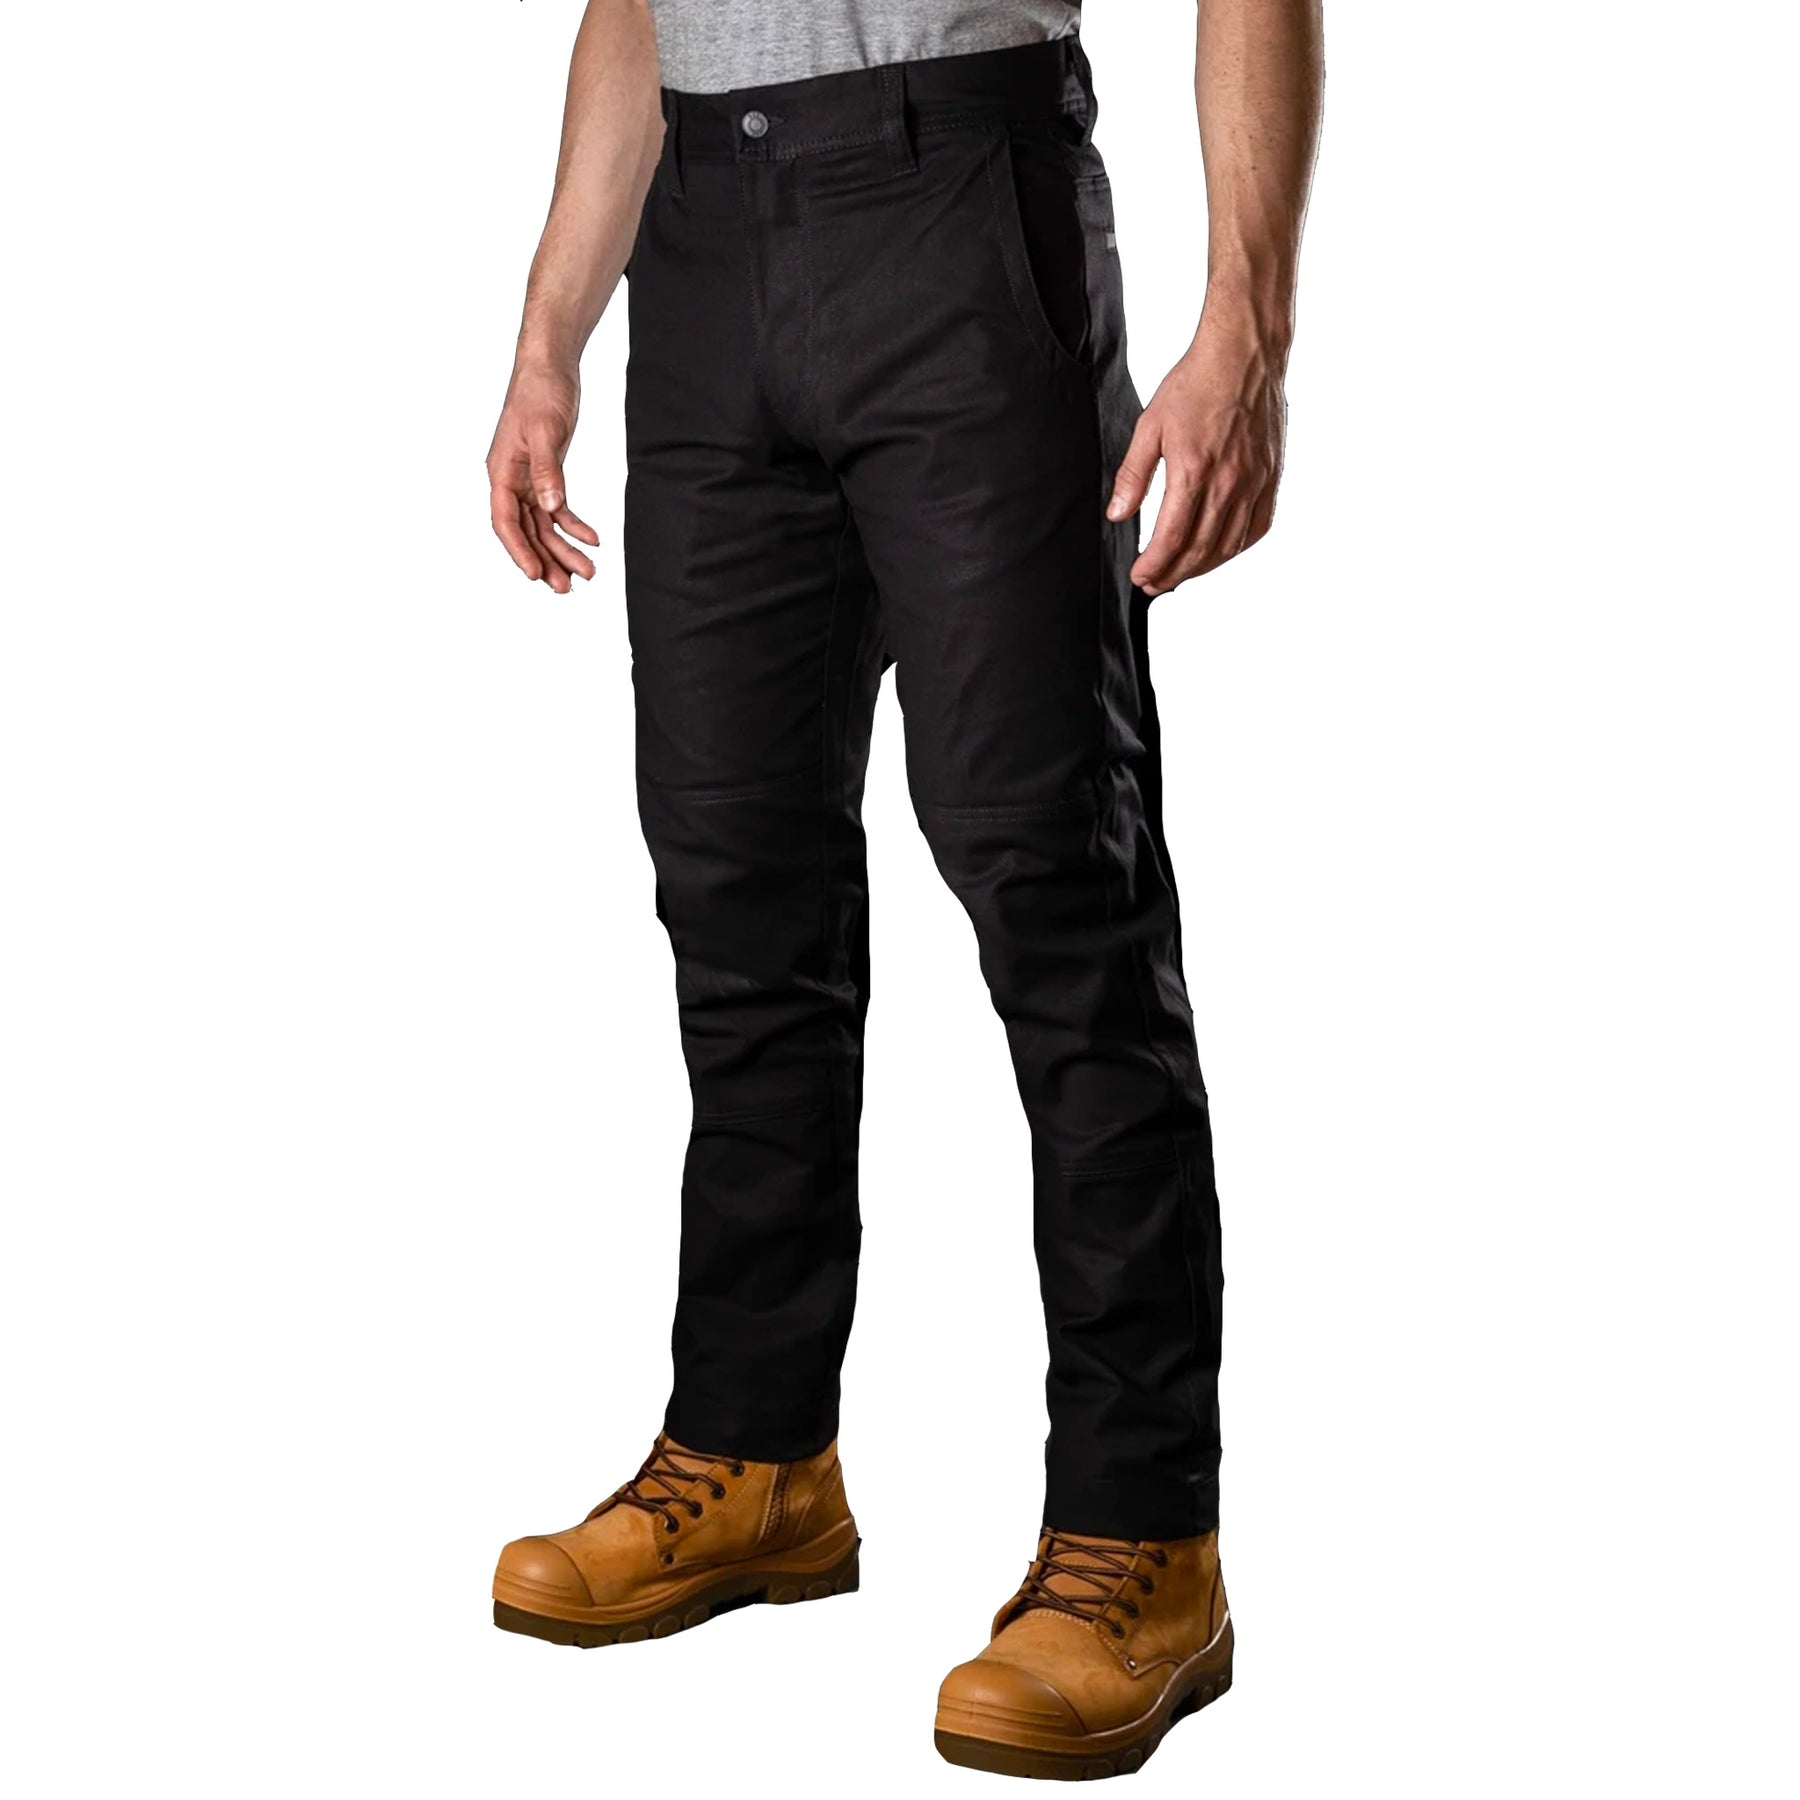 bad 247 slim fit chino work pants in black